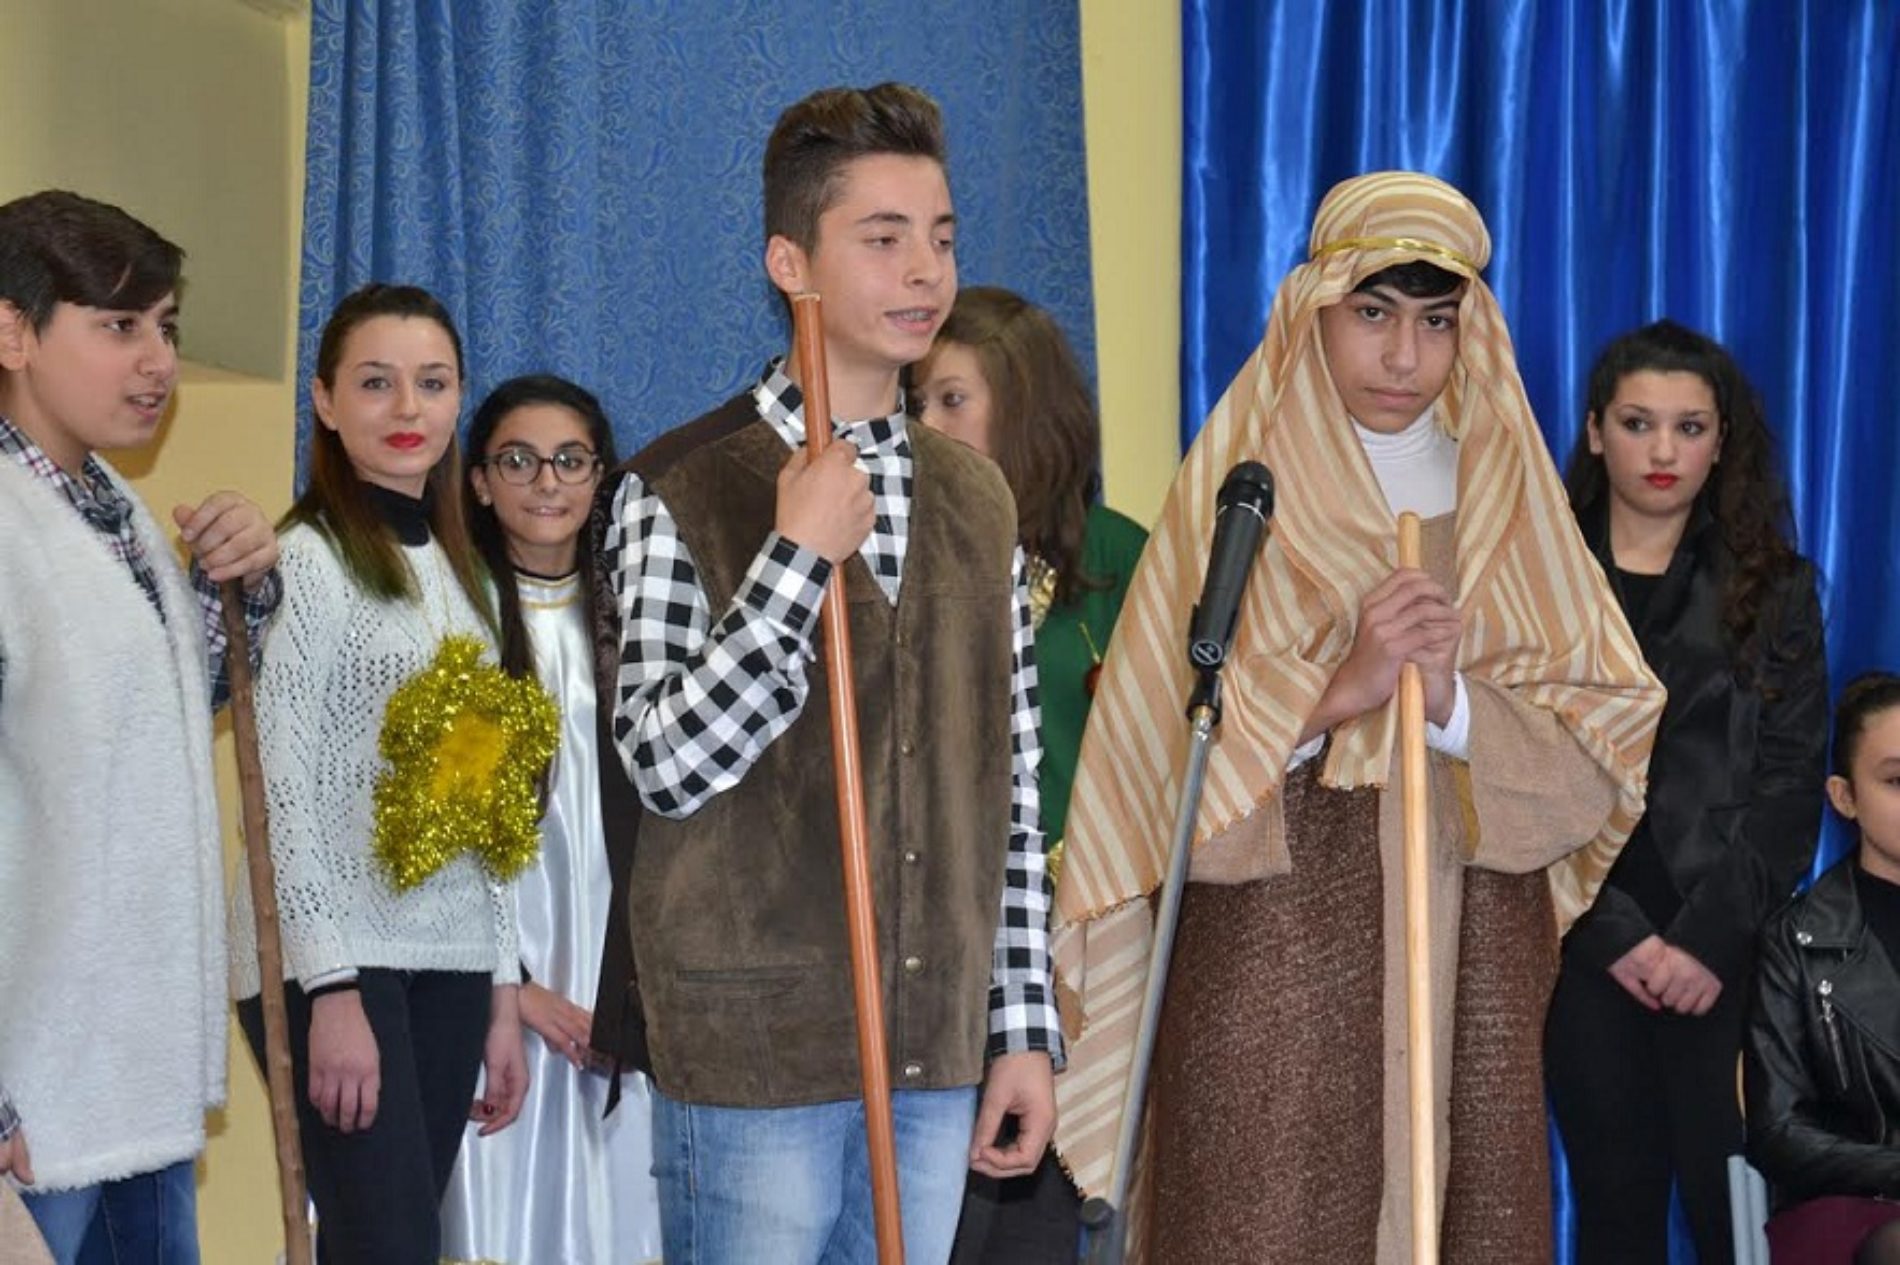 Rappresentazione teatrale “Processo al Natale” della scuola “G. Verga” di Barrafranca